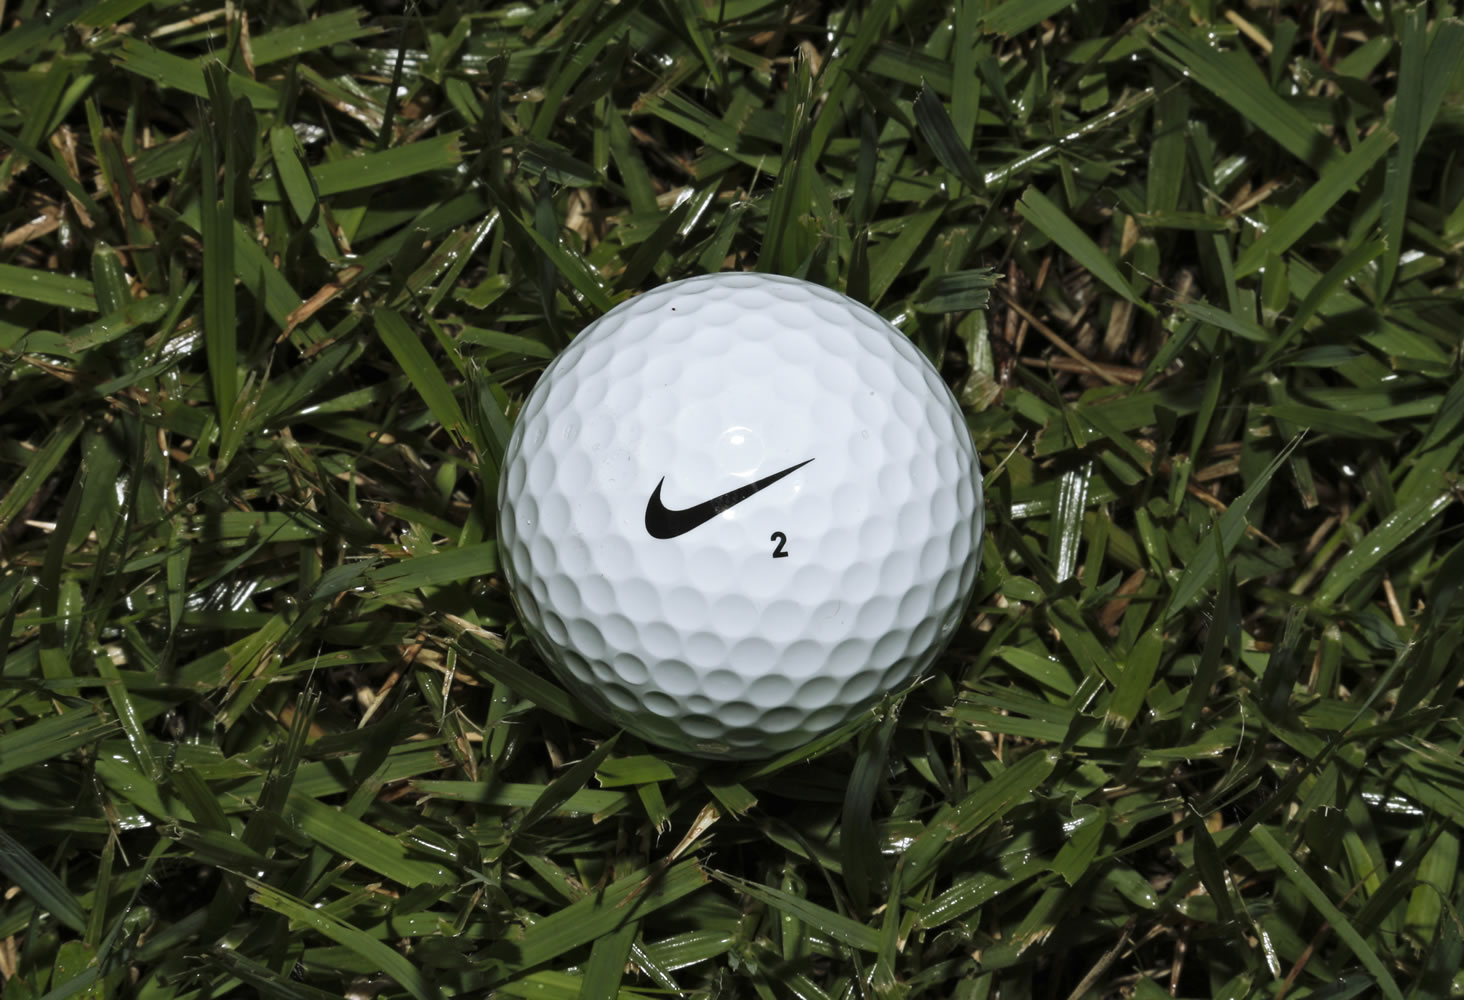 A Nike One golf ball